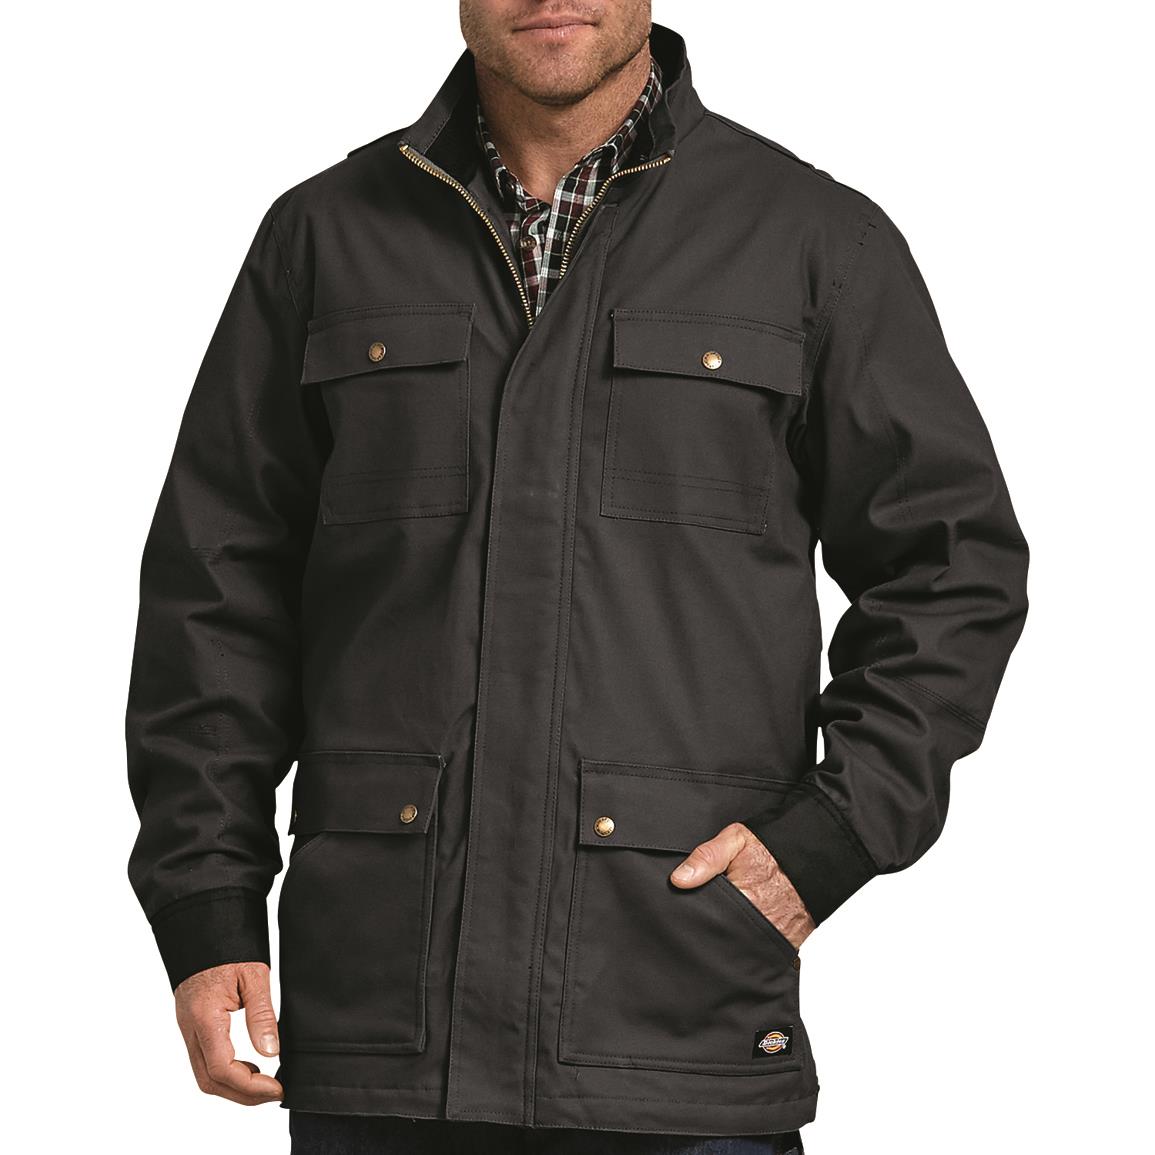 Dickies Men's FLEX Lined Sanded Duck Coat - 710714, Jackets, Coats ...